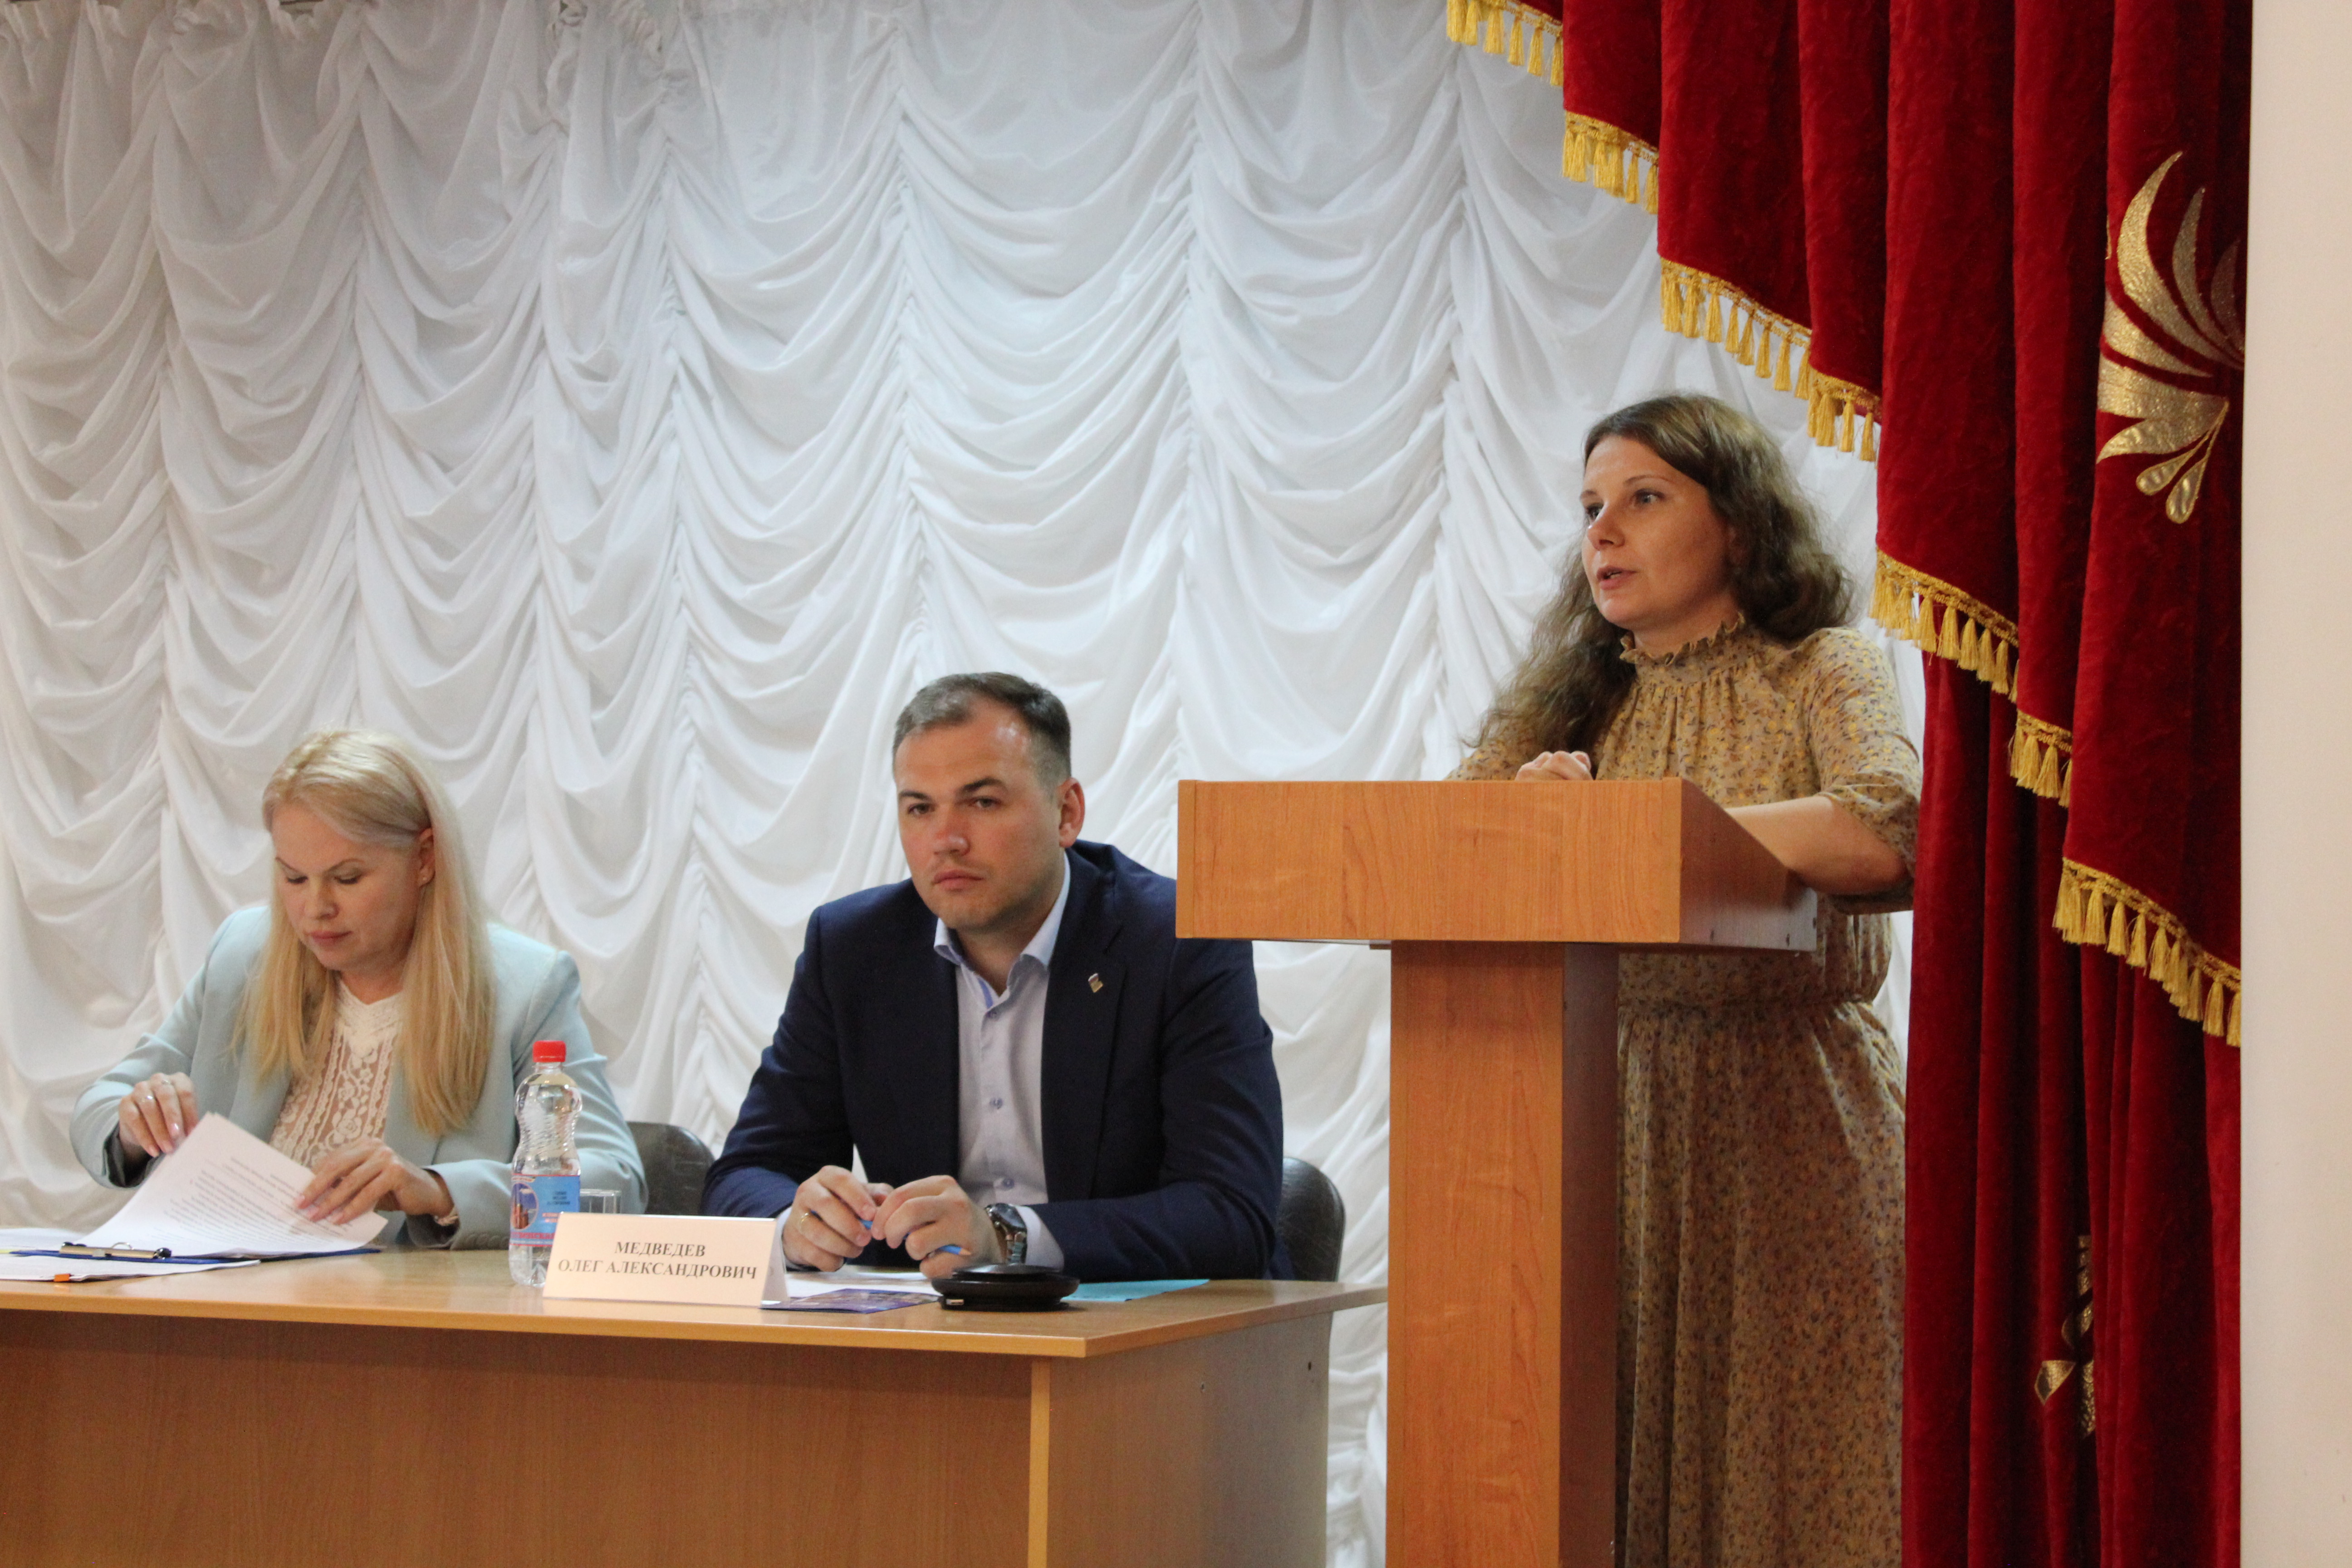 23 июня 2022 года Совет муниципальных образований Белгородской области  на территории Яковлевского городского округа организовал и провел дискуссионный клуб по теме:.